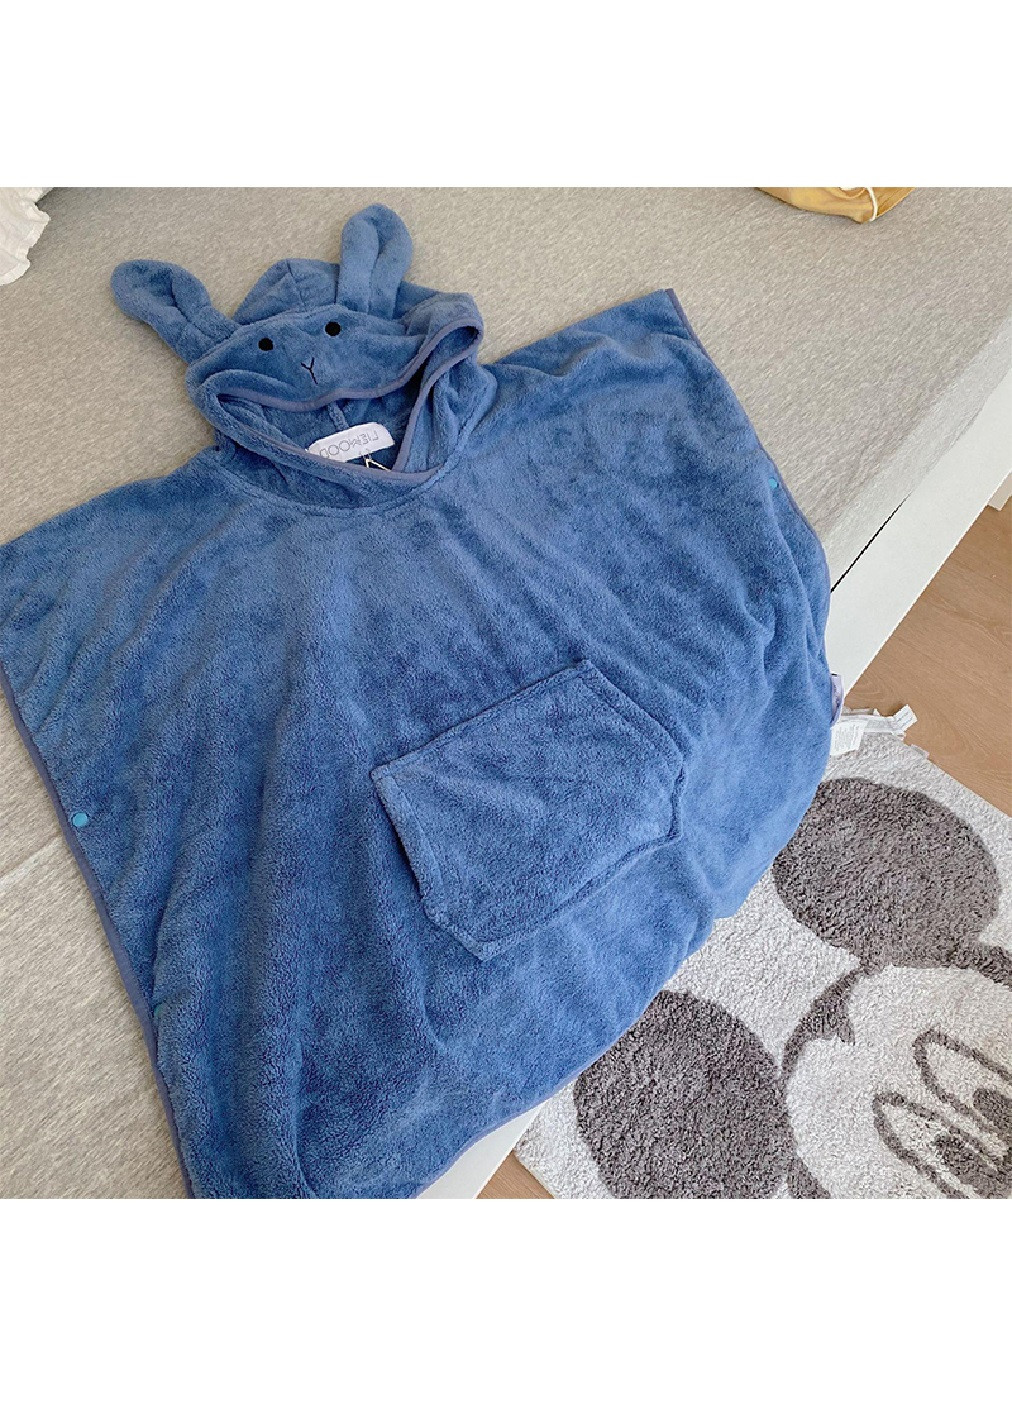 Unbranded полотенце с капюшоном пончо детское банное плед уголок конверт для купания 70х75 см (473207-prob) синее однотонный синий производство -